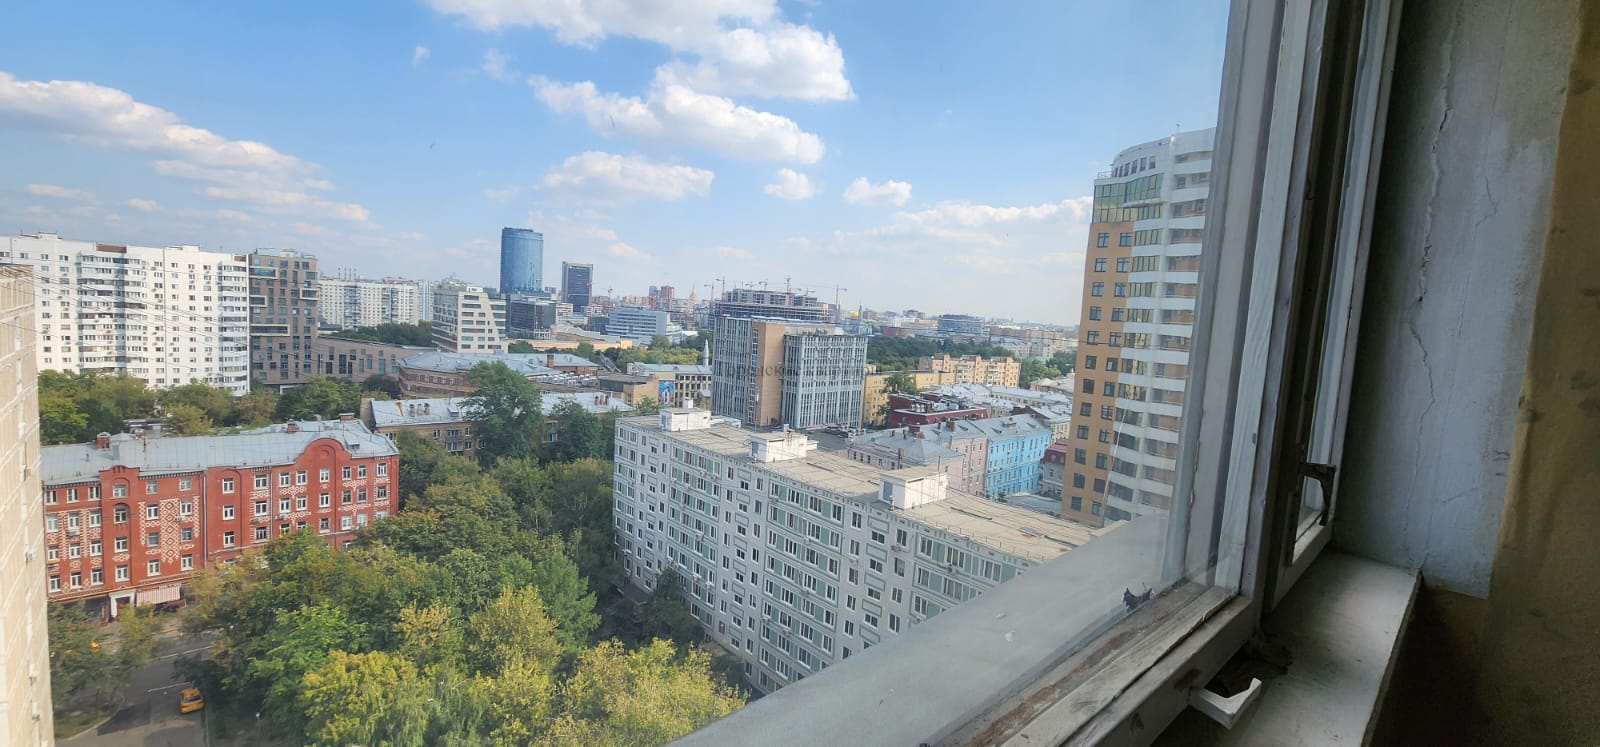 Продам квартиру в Москве по адресу Октябрьский переулок, 12, площадь 195 квм Недвижимость Москва (Россия)    Соседи тихие